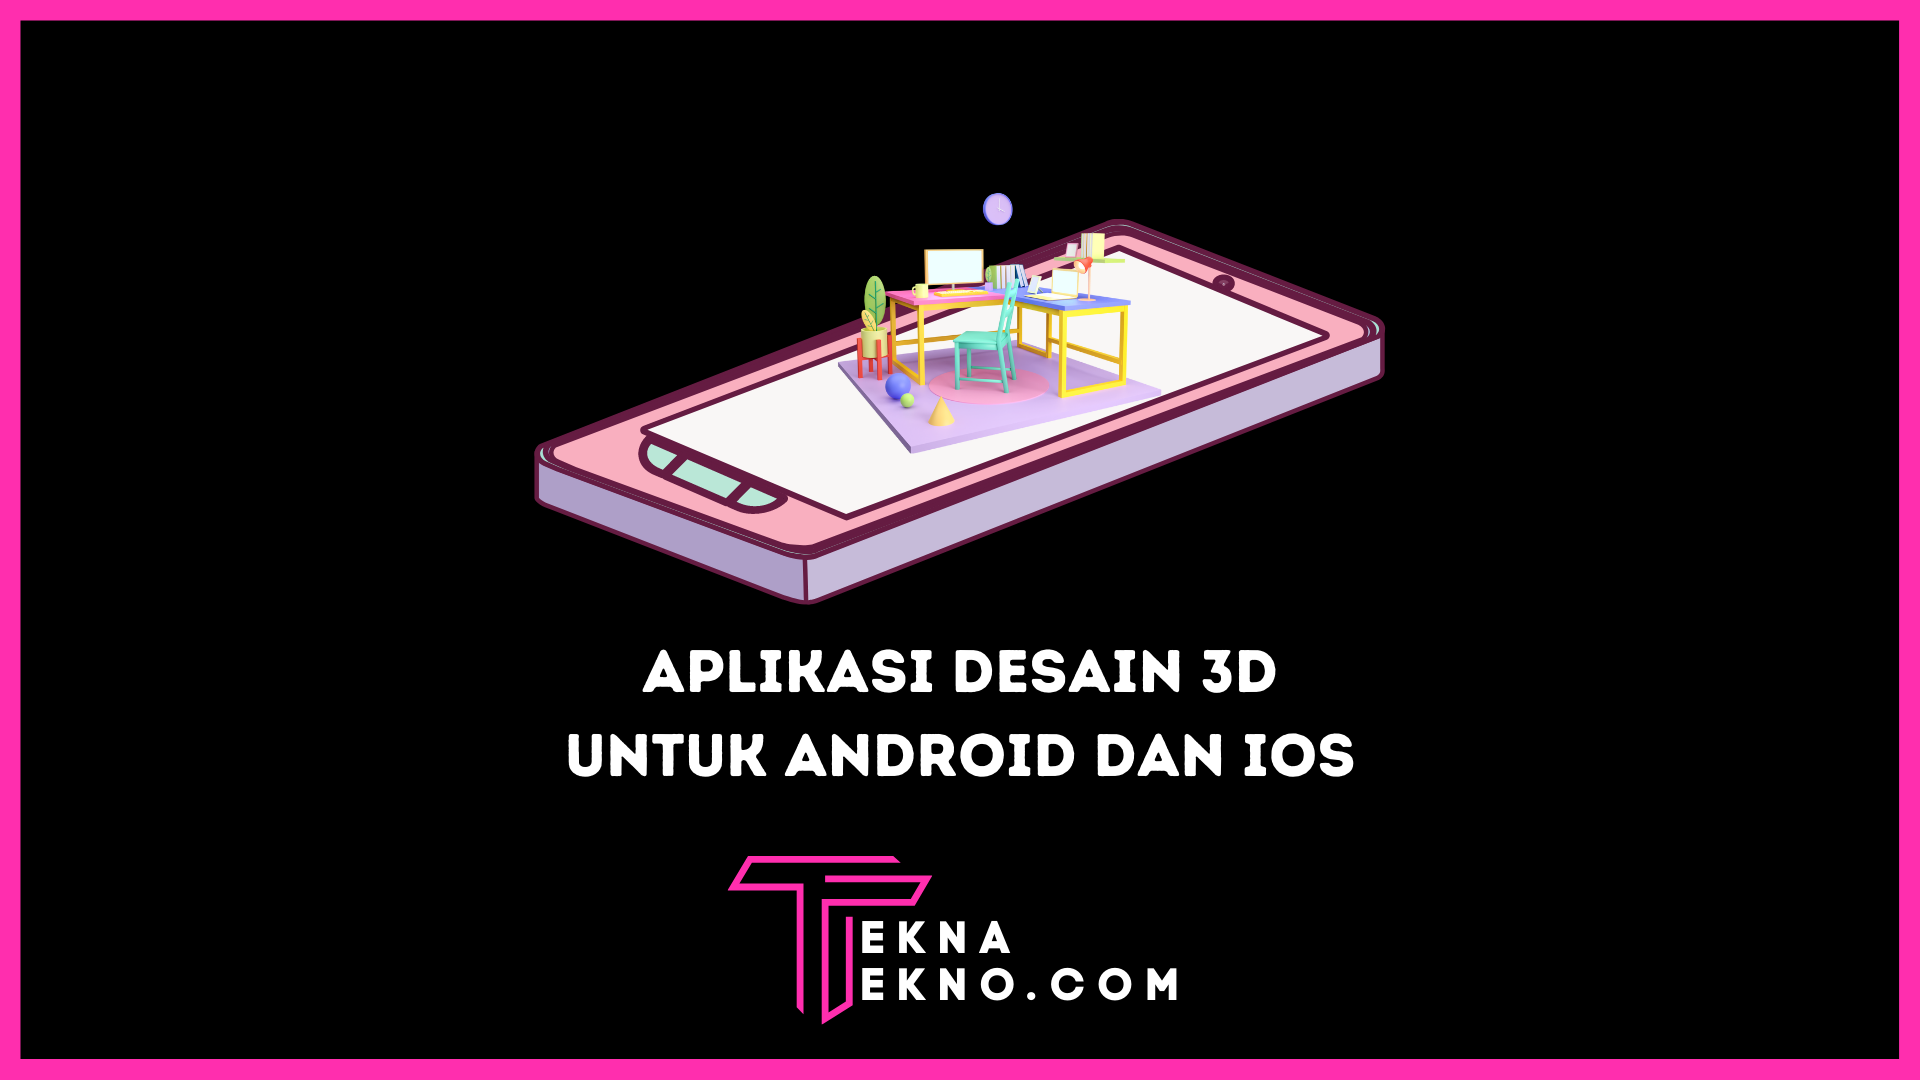 9 Aplikasi Desain 3D Terbaik untuk Android dan iOS